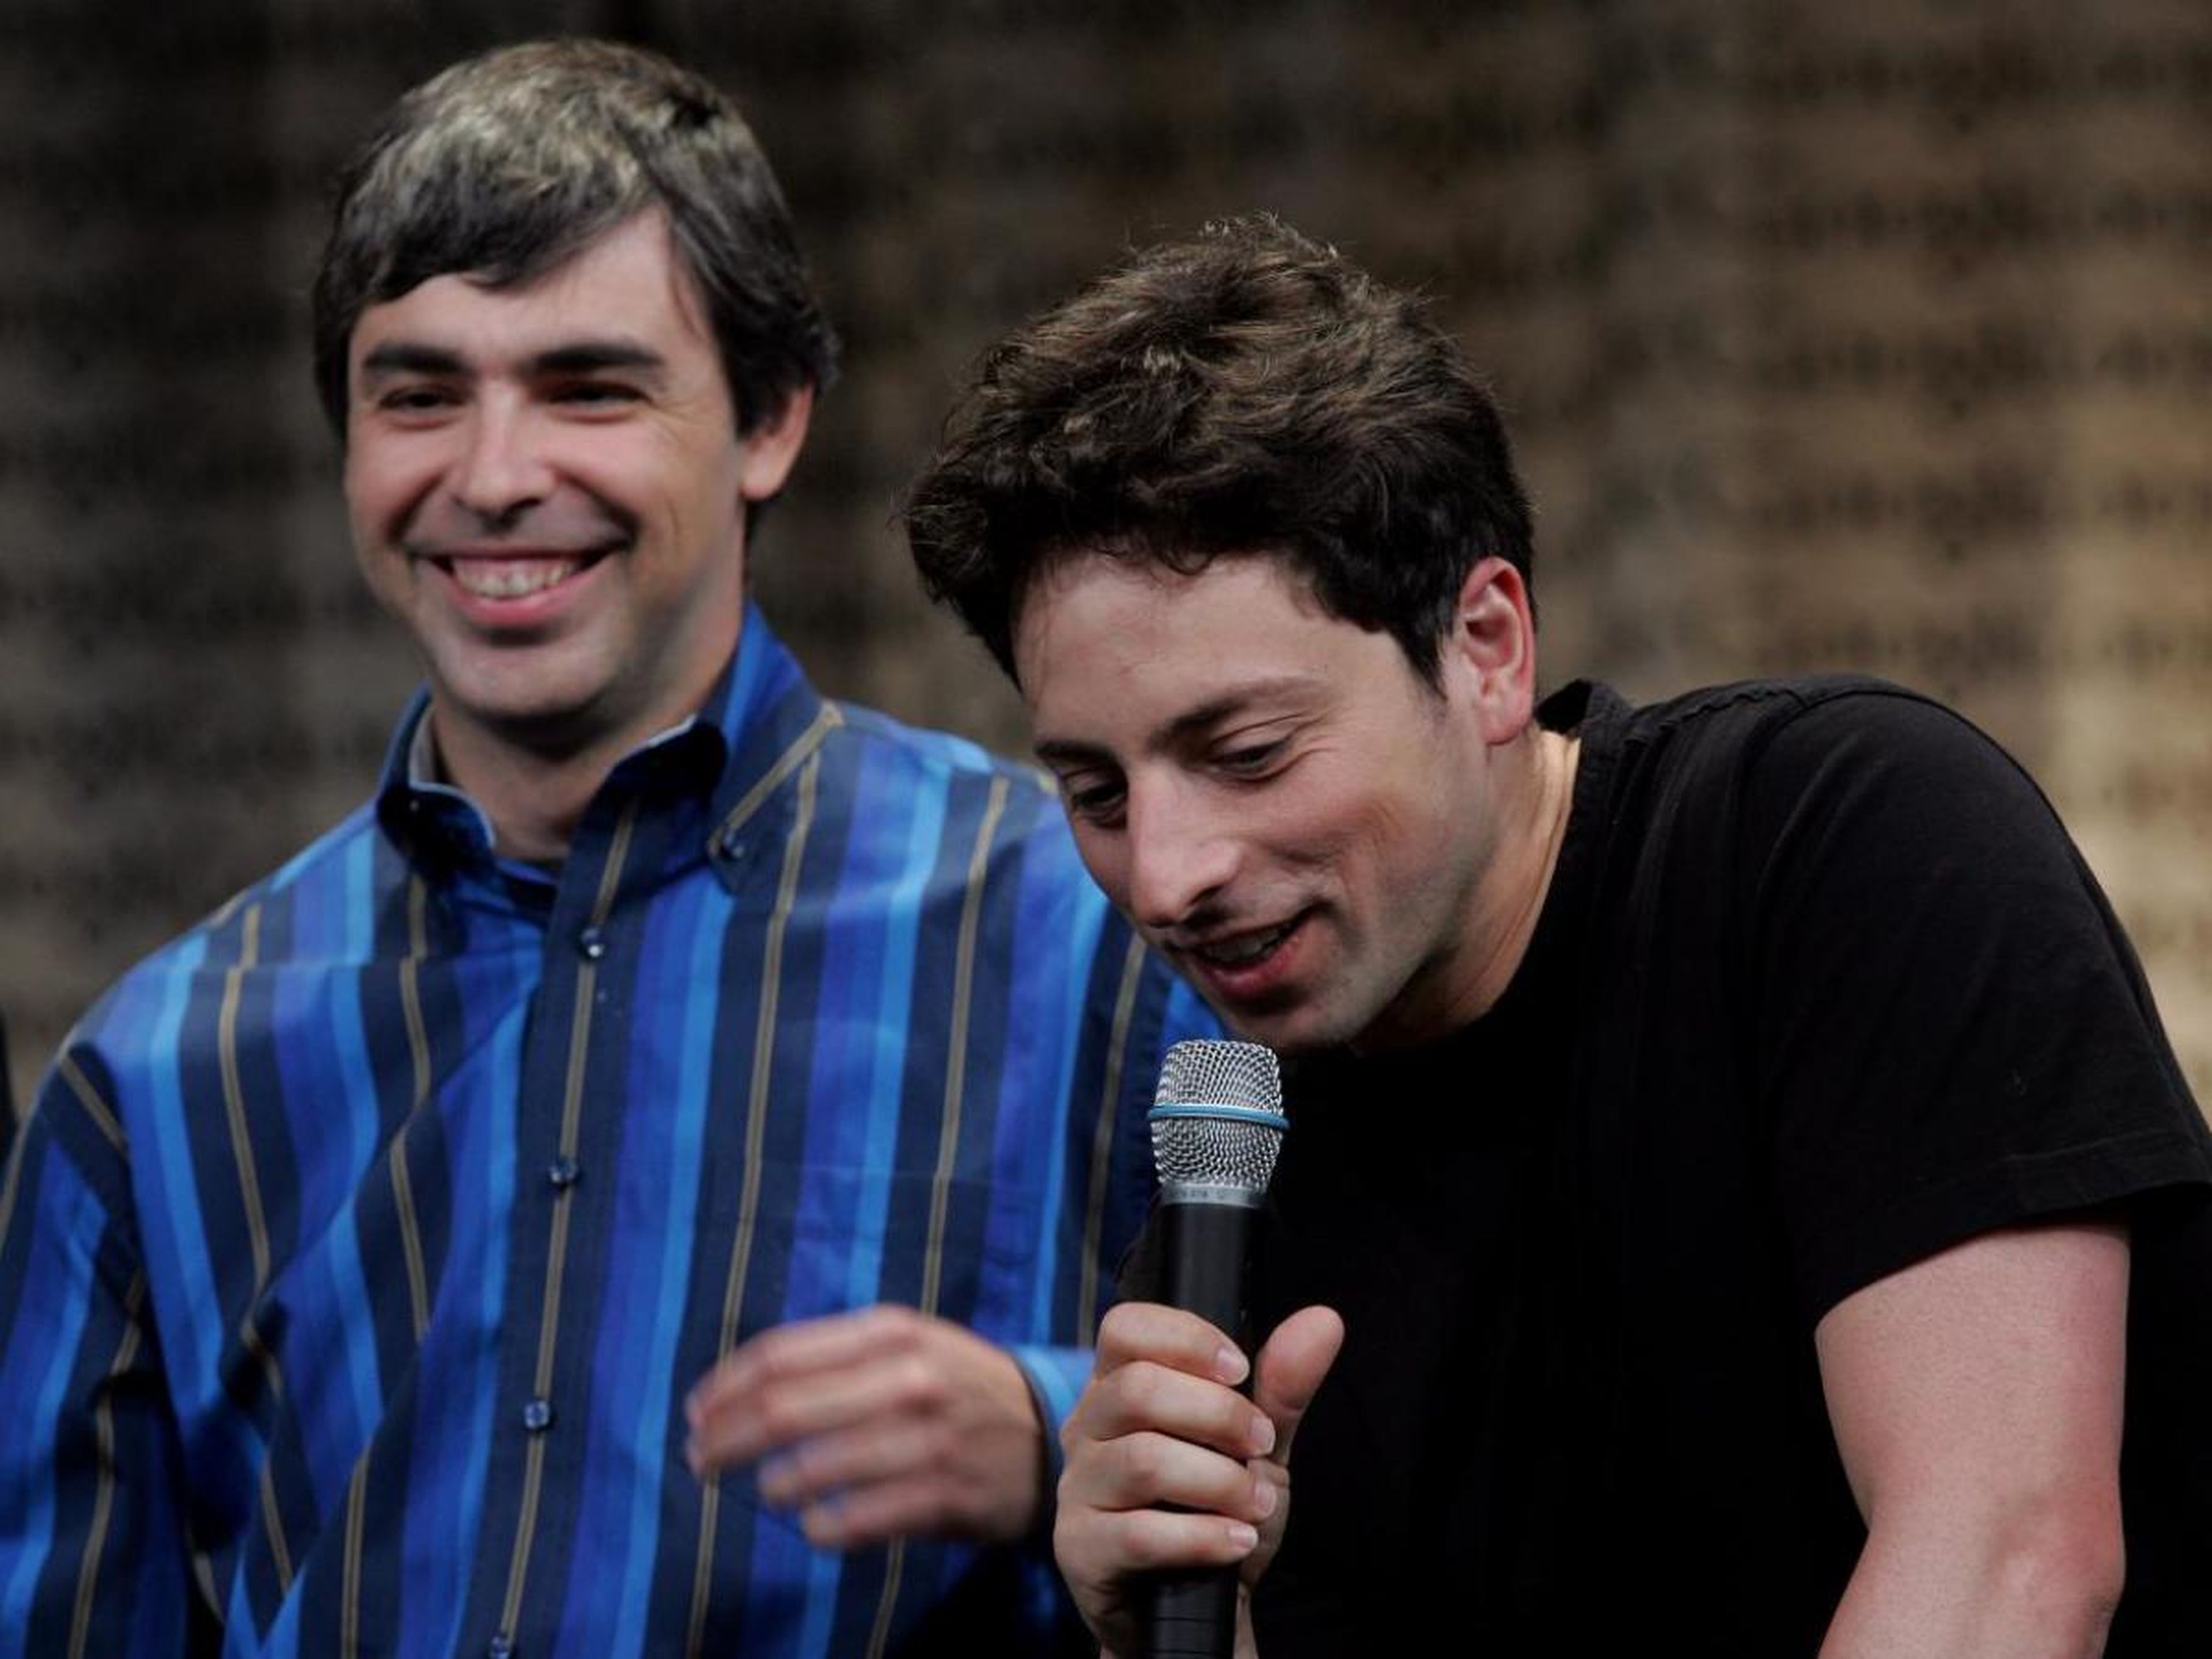 Los cofundadores de Google Page y Brin sonríen durante una conferencia de prensa en Mountain View